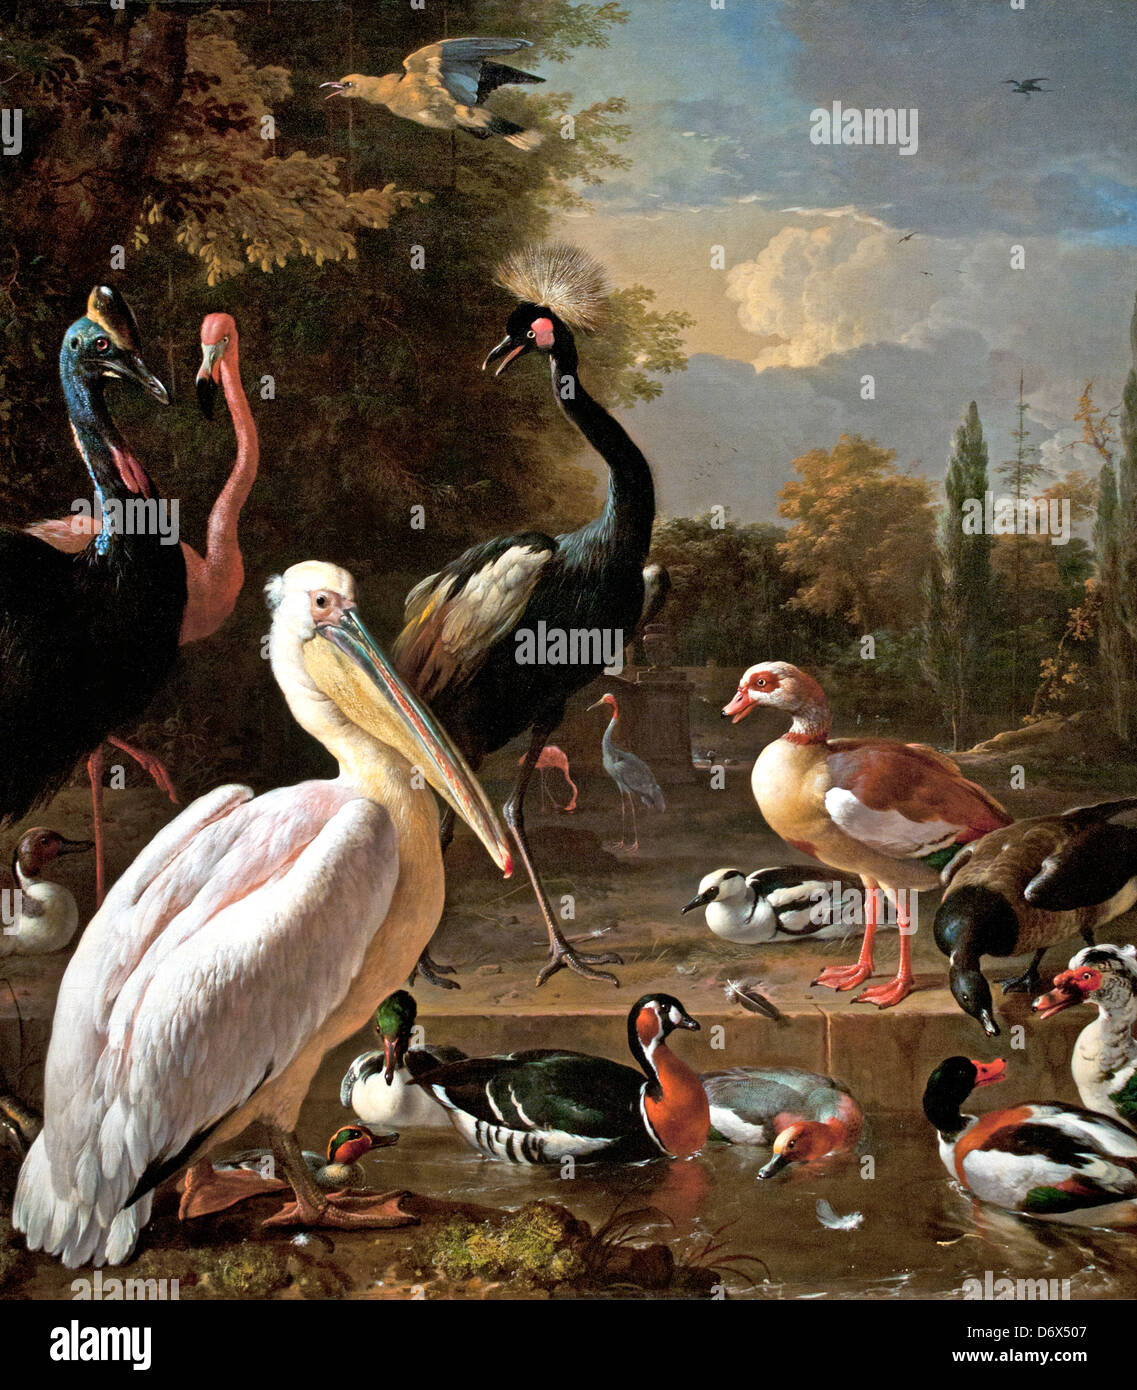 Ein Pelikan und andere Vögel, die einem Wasserbecken bekannt sind Wie die schwebende Feder 1680 Melchior d' Hondecoeter 1636 - 1695 Die Niederlande Niederländisch Stockfoto